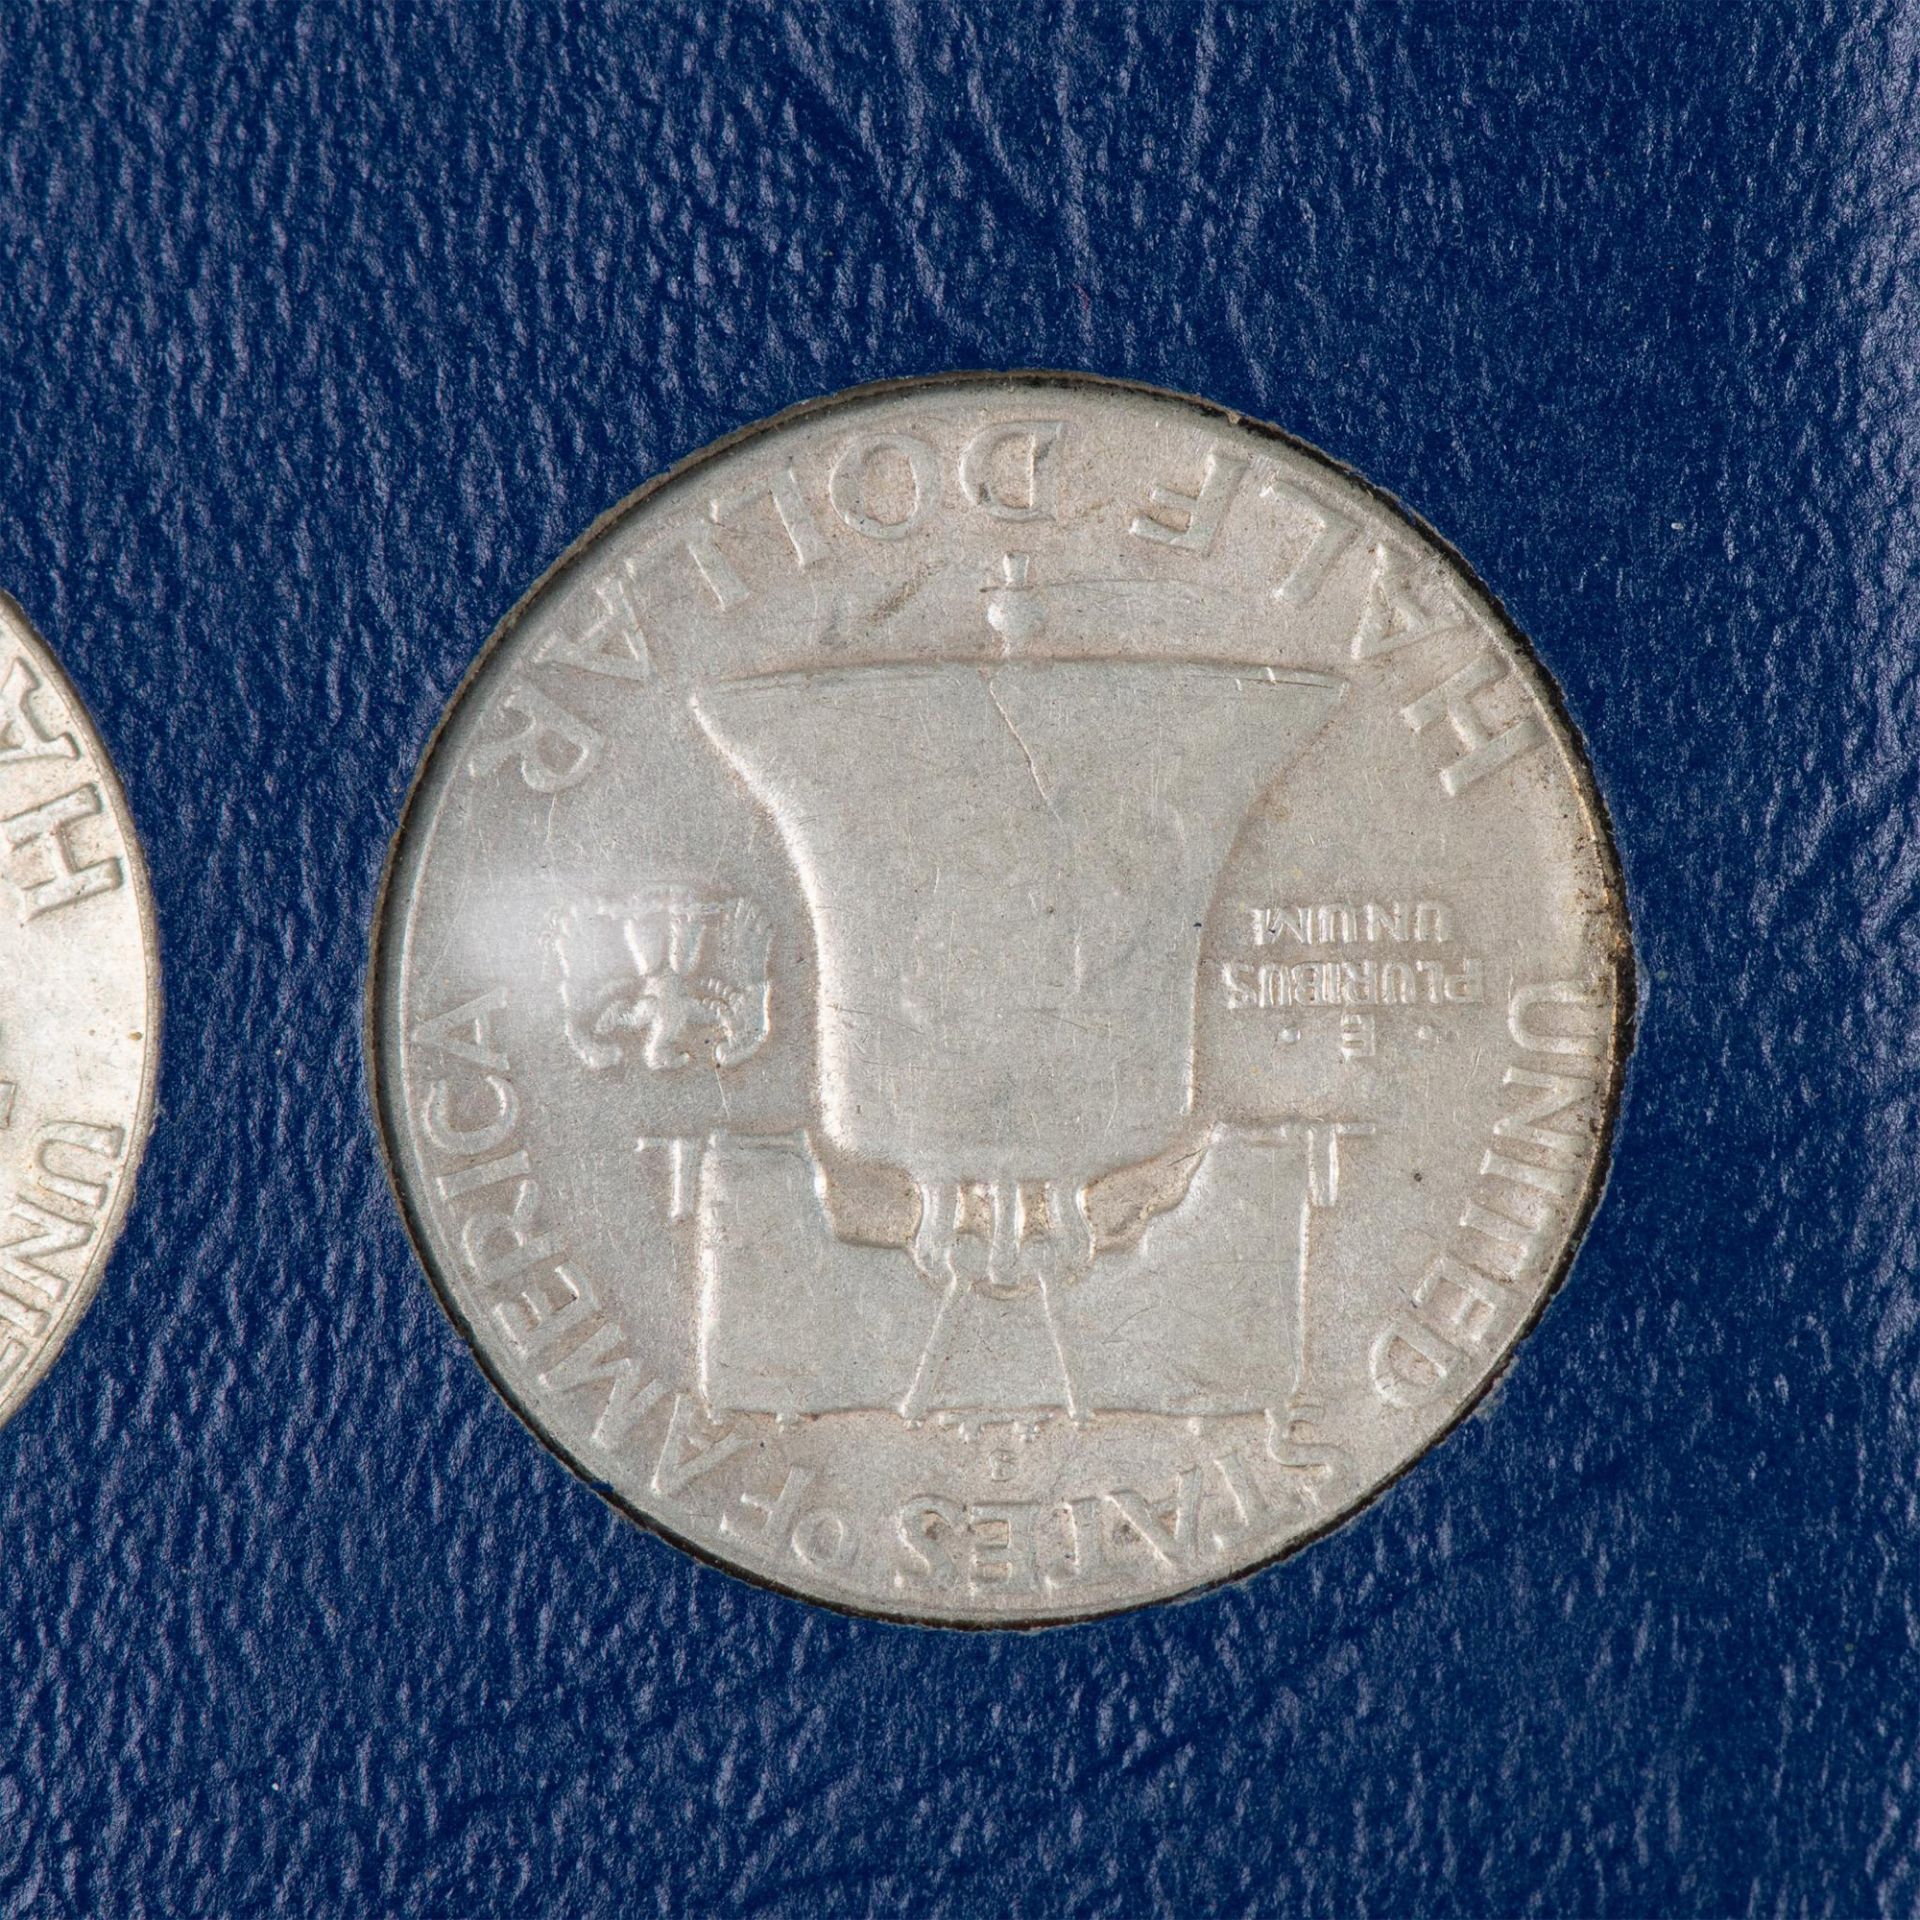 1 BOOK OF US FRANKLIN HALF DOLLAR COINS 1948-1963 - Bild 4 aus 9